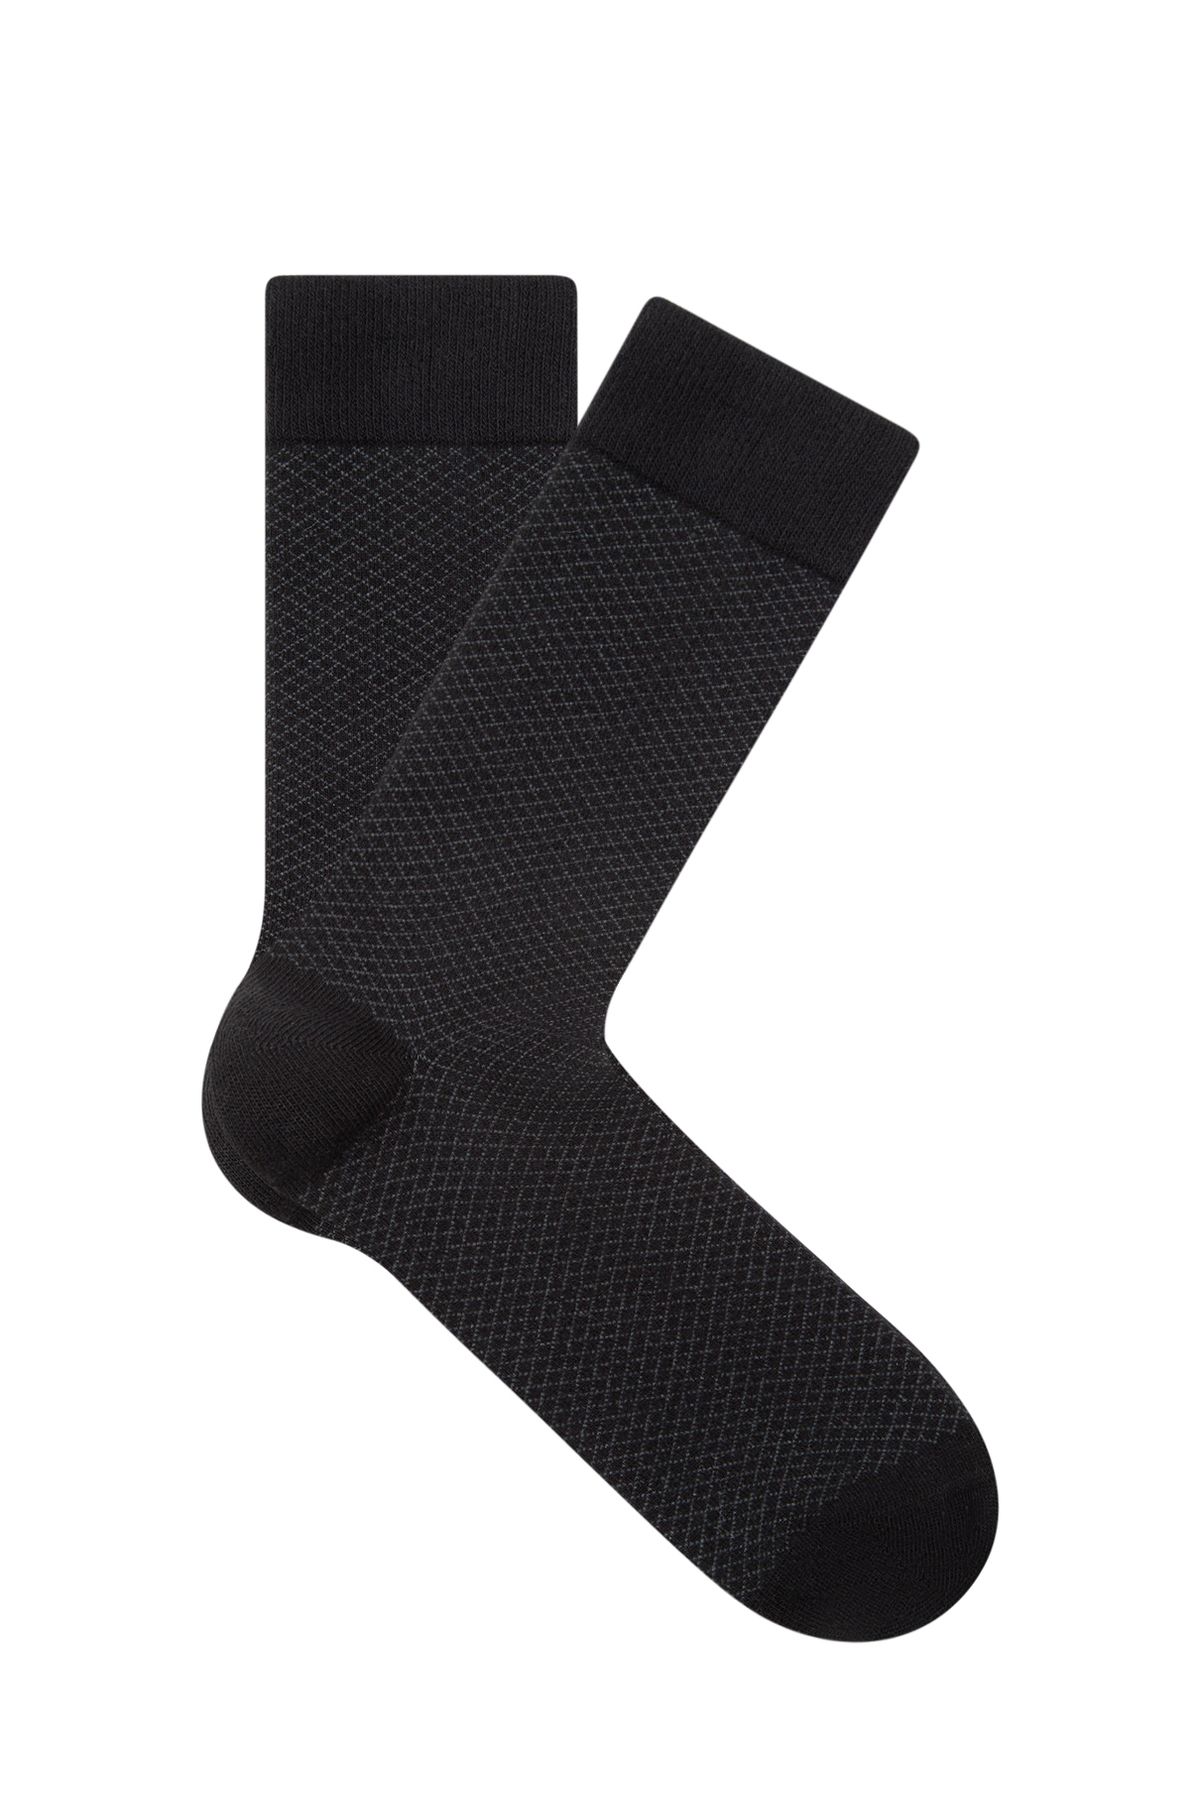 Mavi Baskılı Siyah Soket Çorap 091967-900